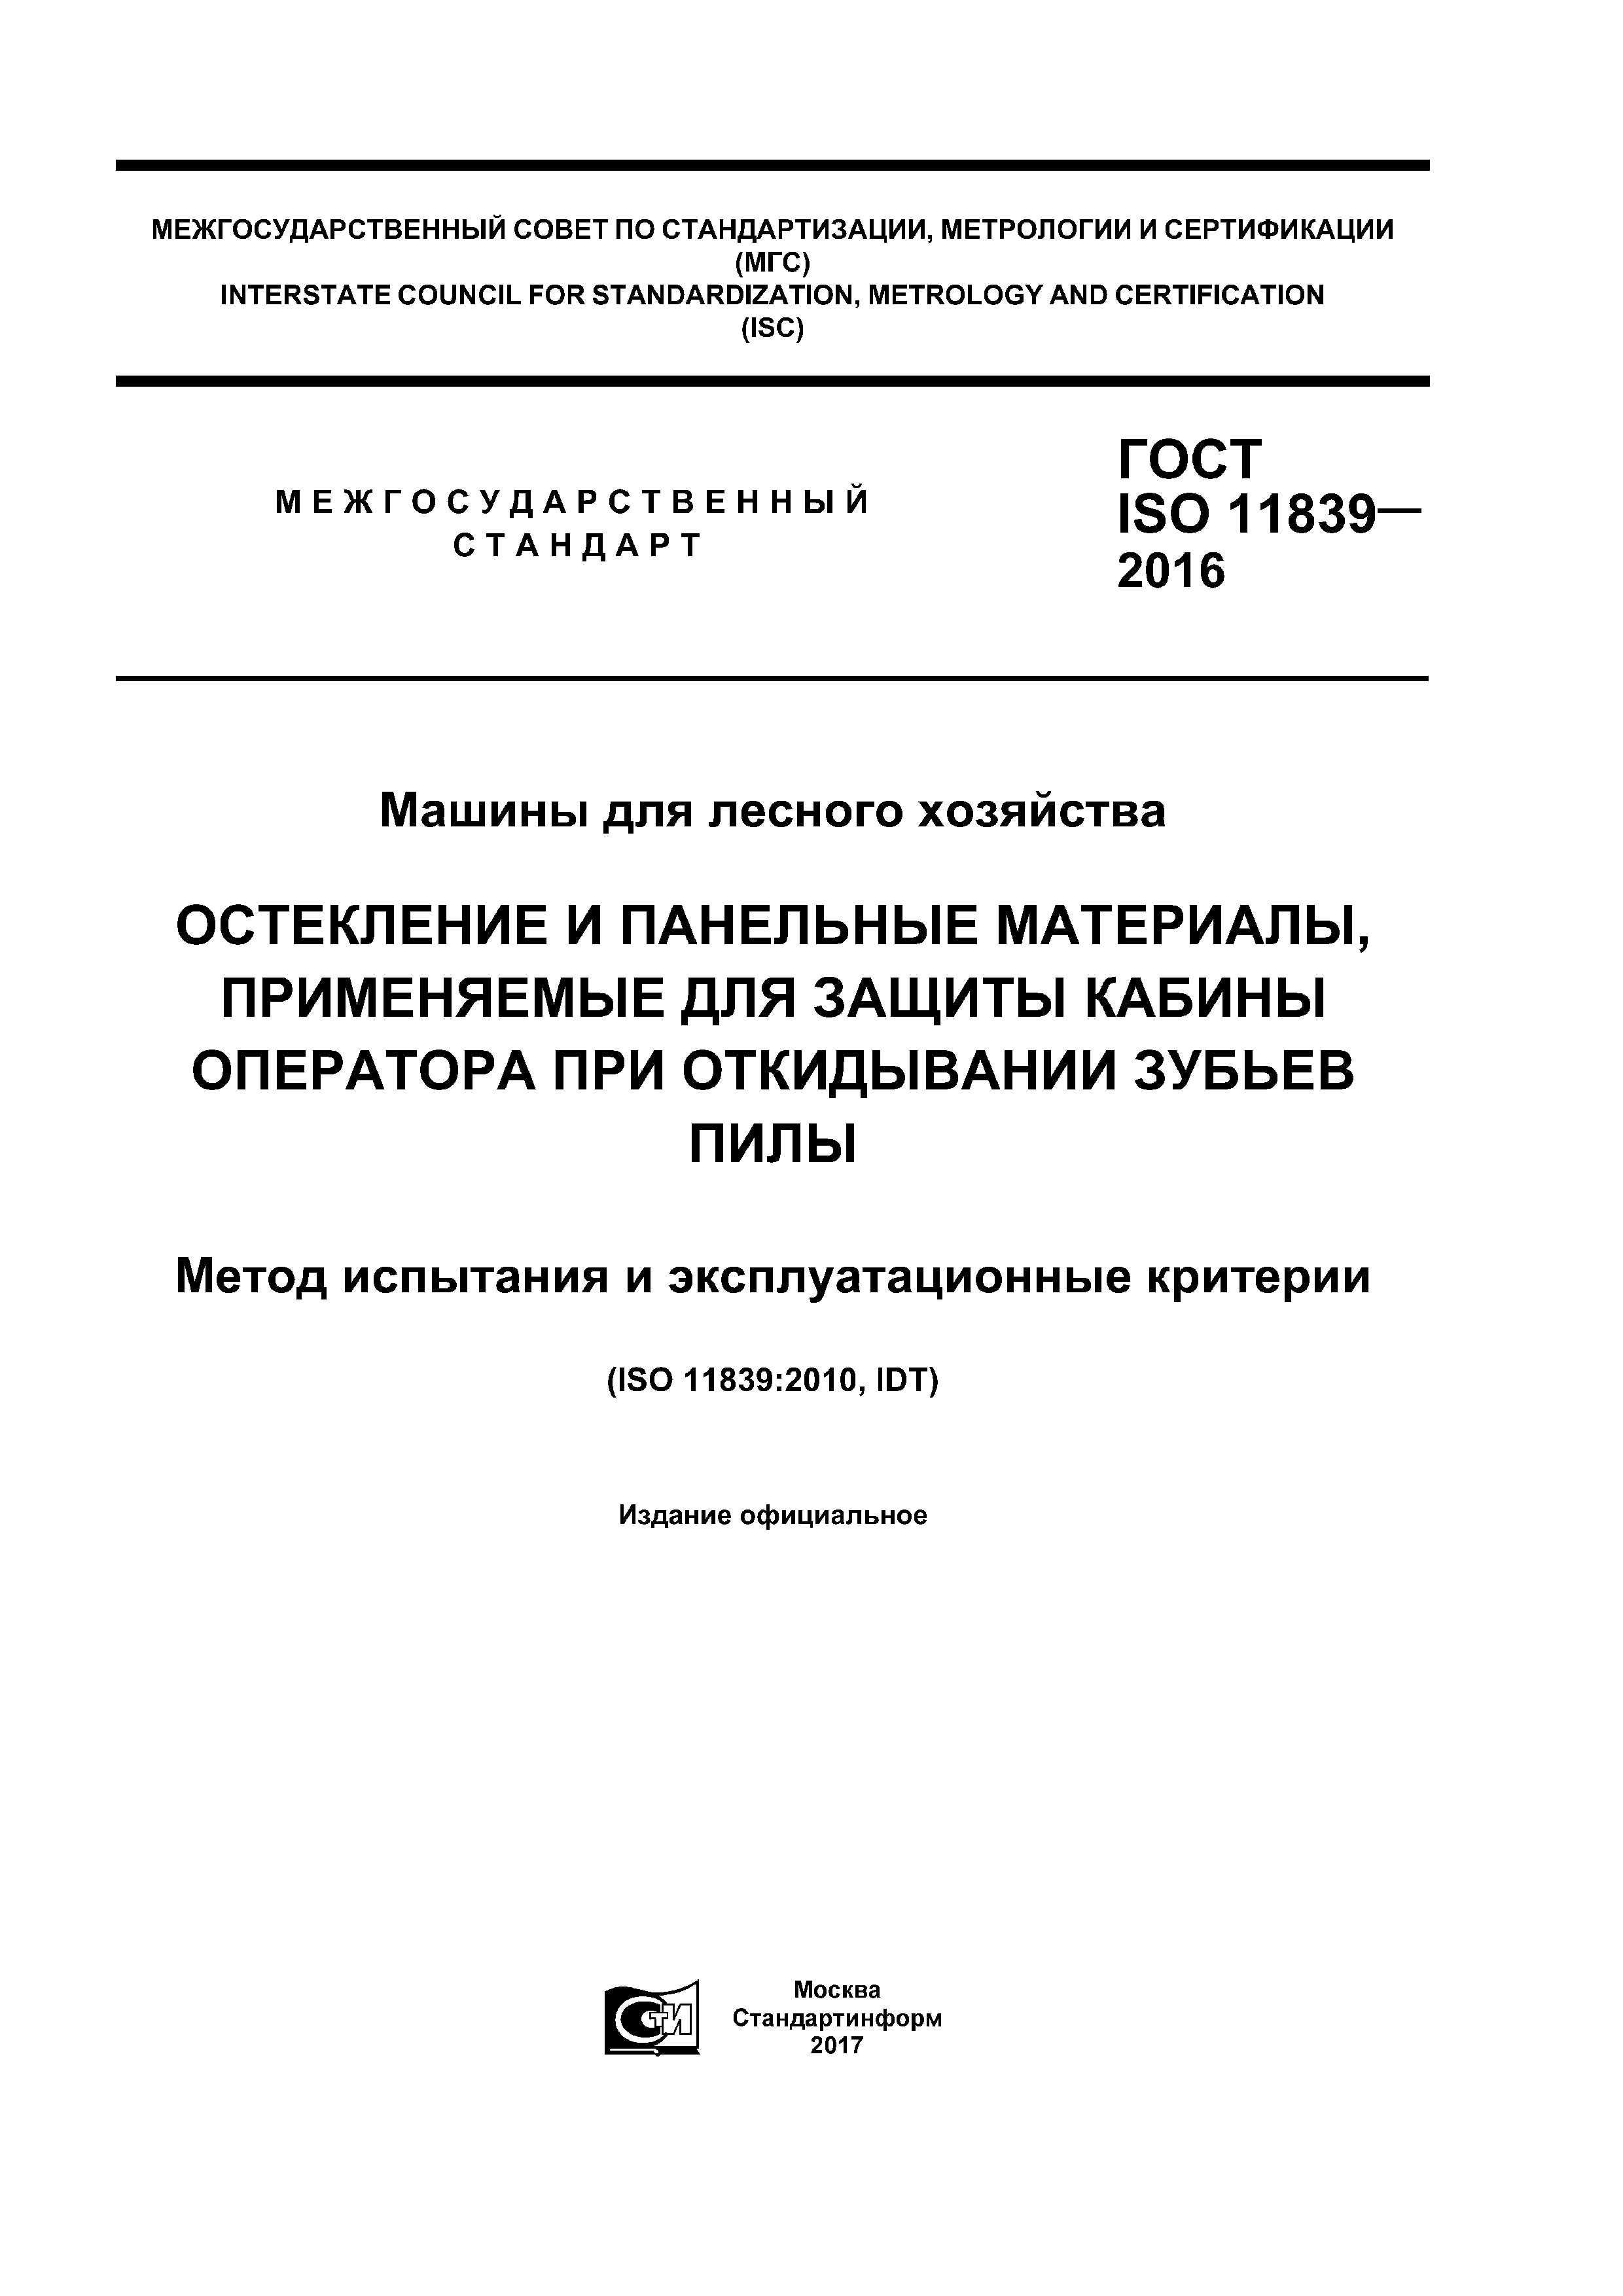 ГОСТ ISO 11839-2016